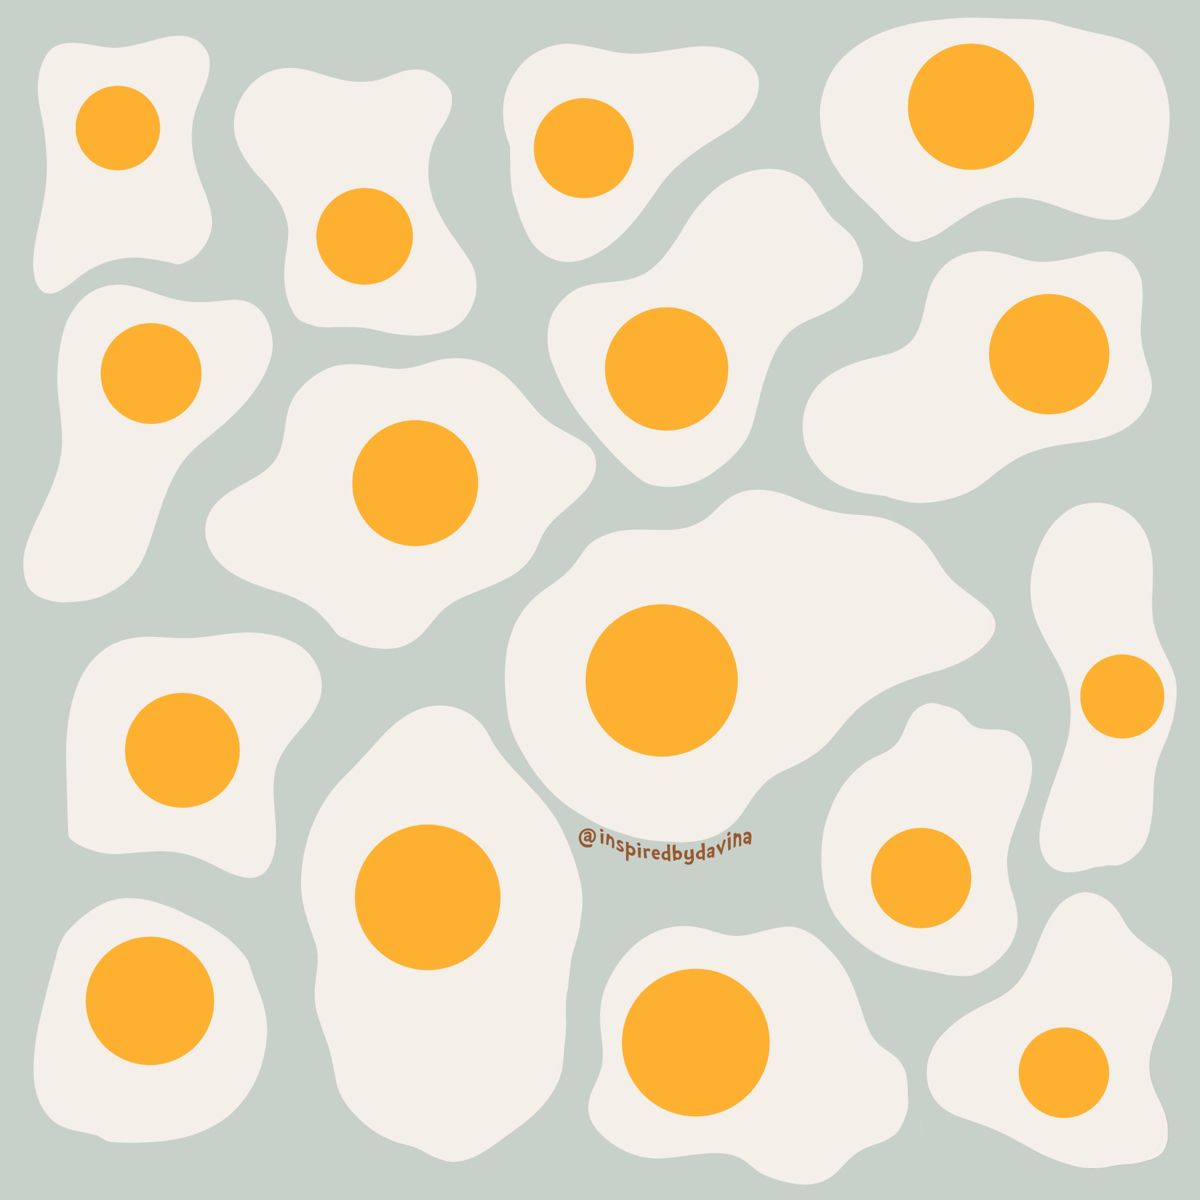 Fried Egg Wallpaper Free Fried Egg Background